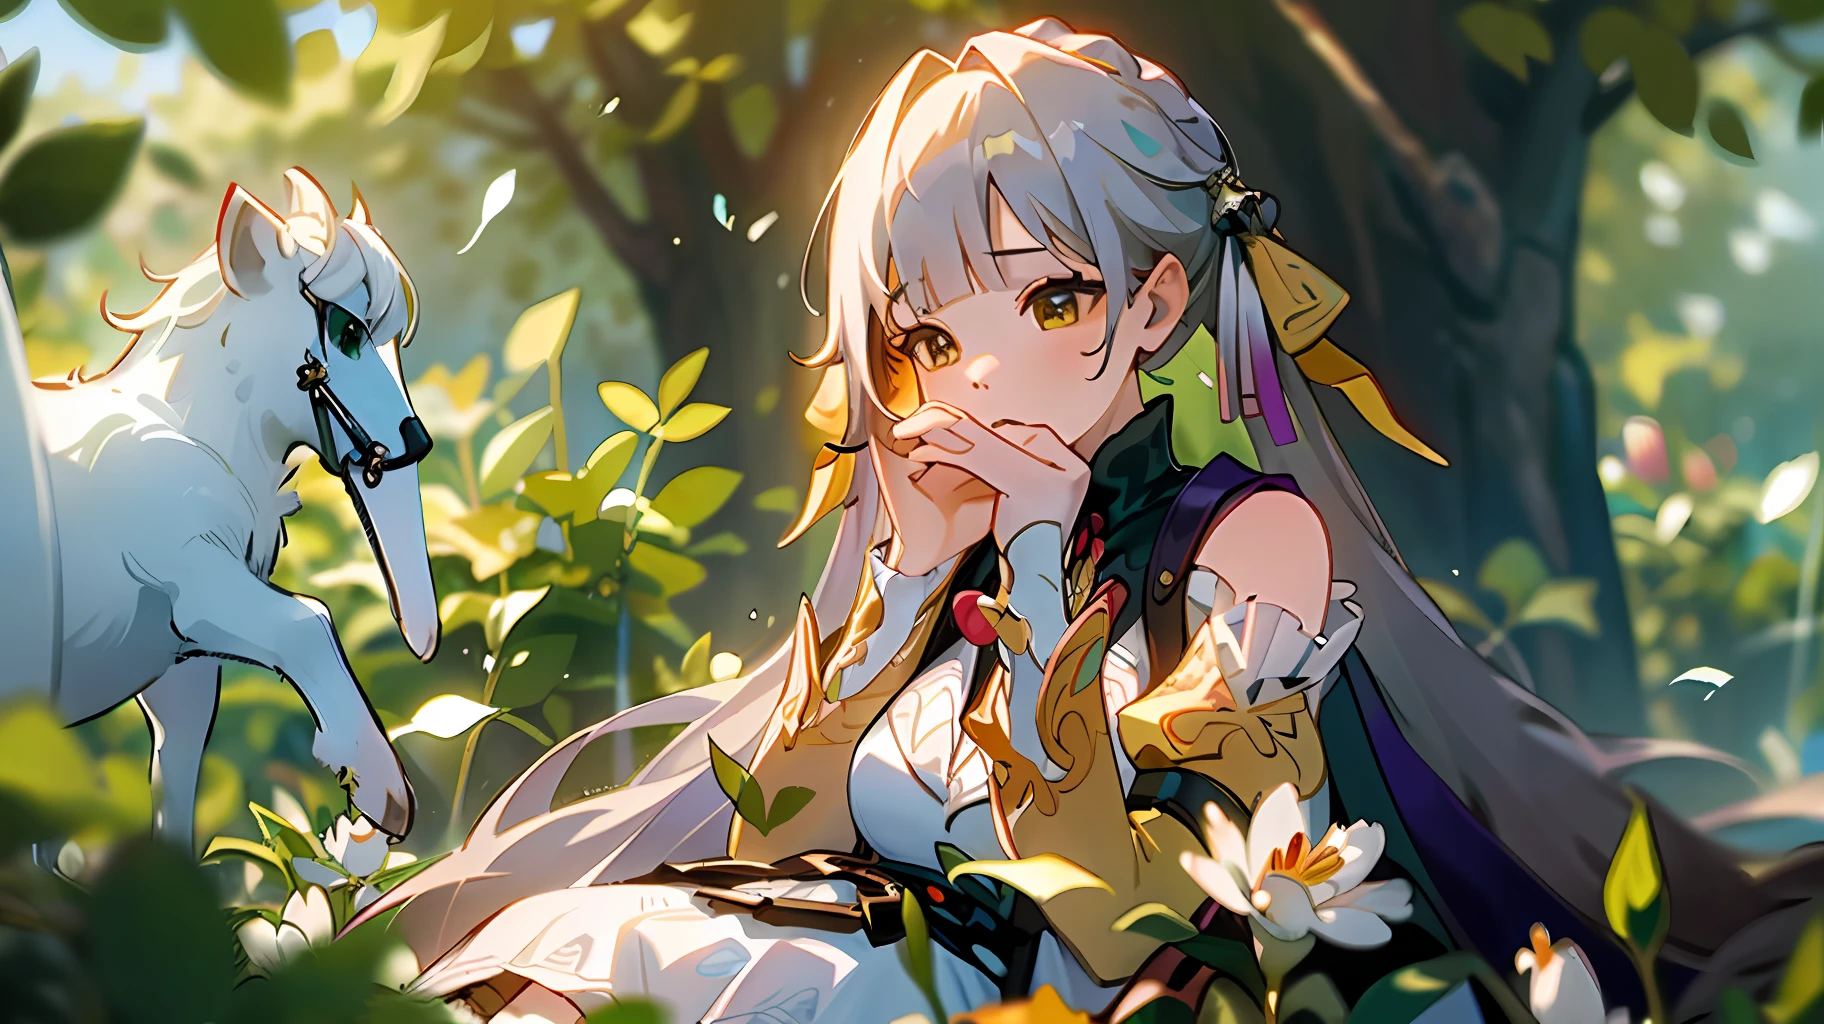 (傑作, 最好的品質),1 個長著白髮的女孩坐在綠色植物和鮮花的田野裡, 她的手放在下巴下面, 溫暖的燈光, 白色禮服, 前景模糊